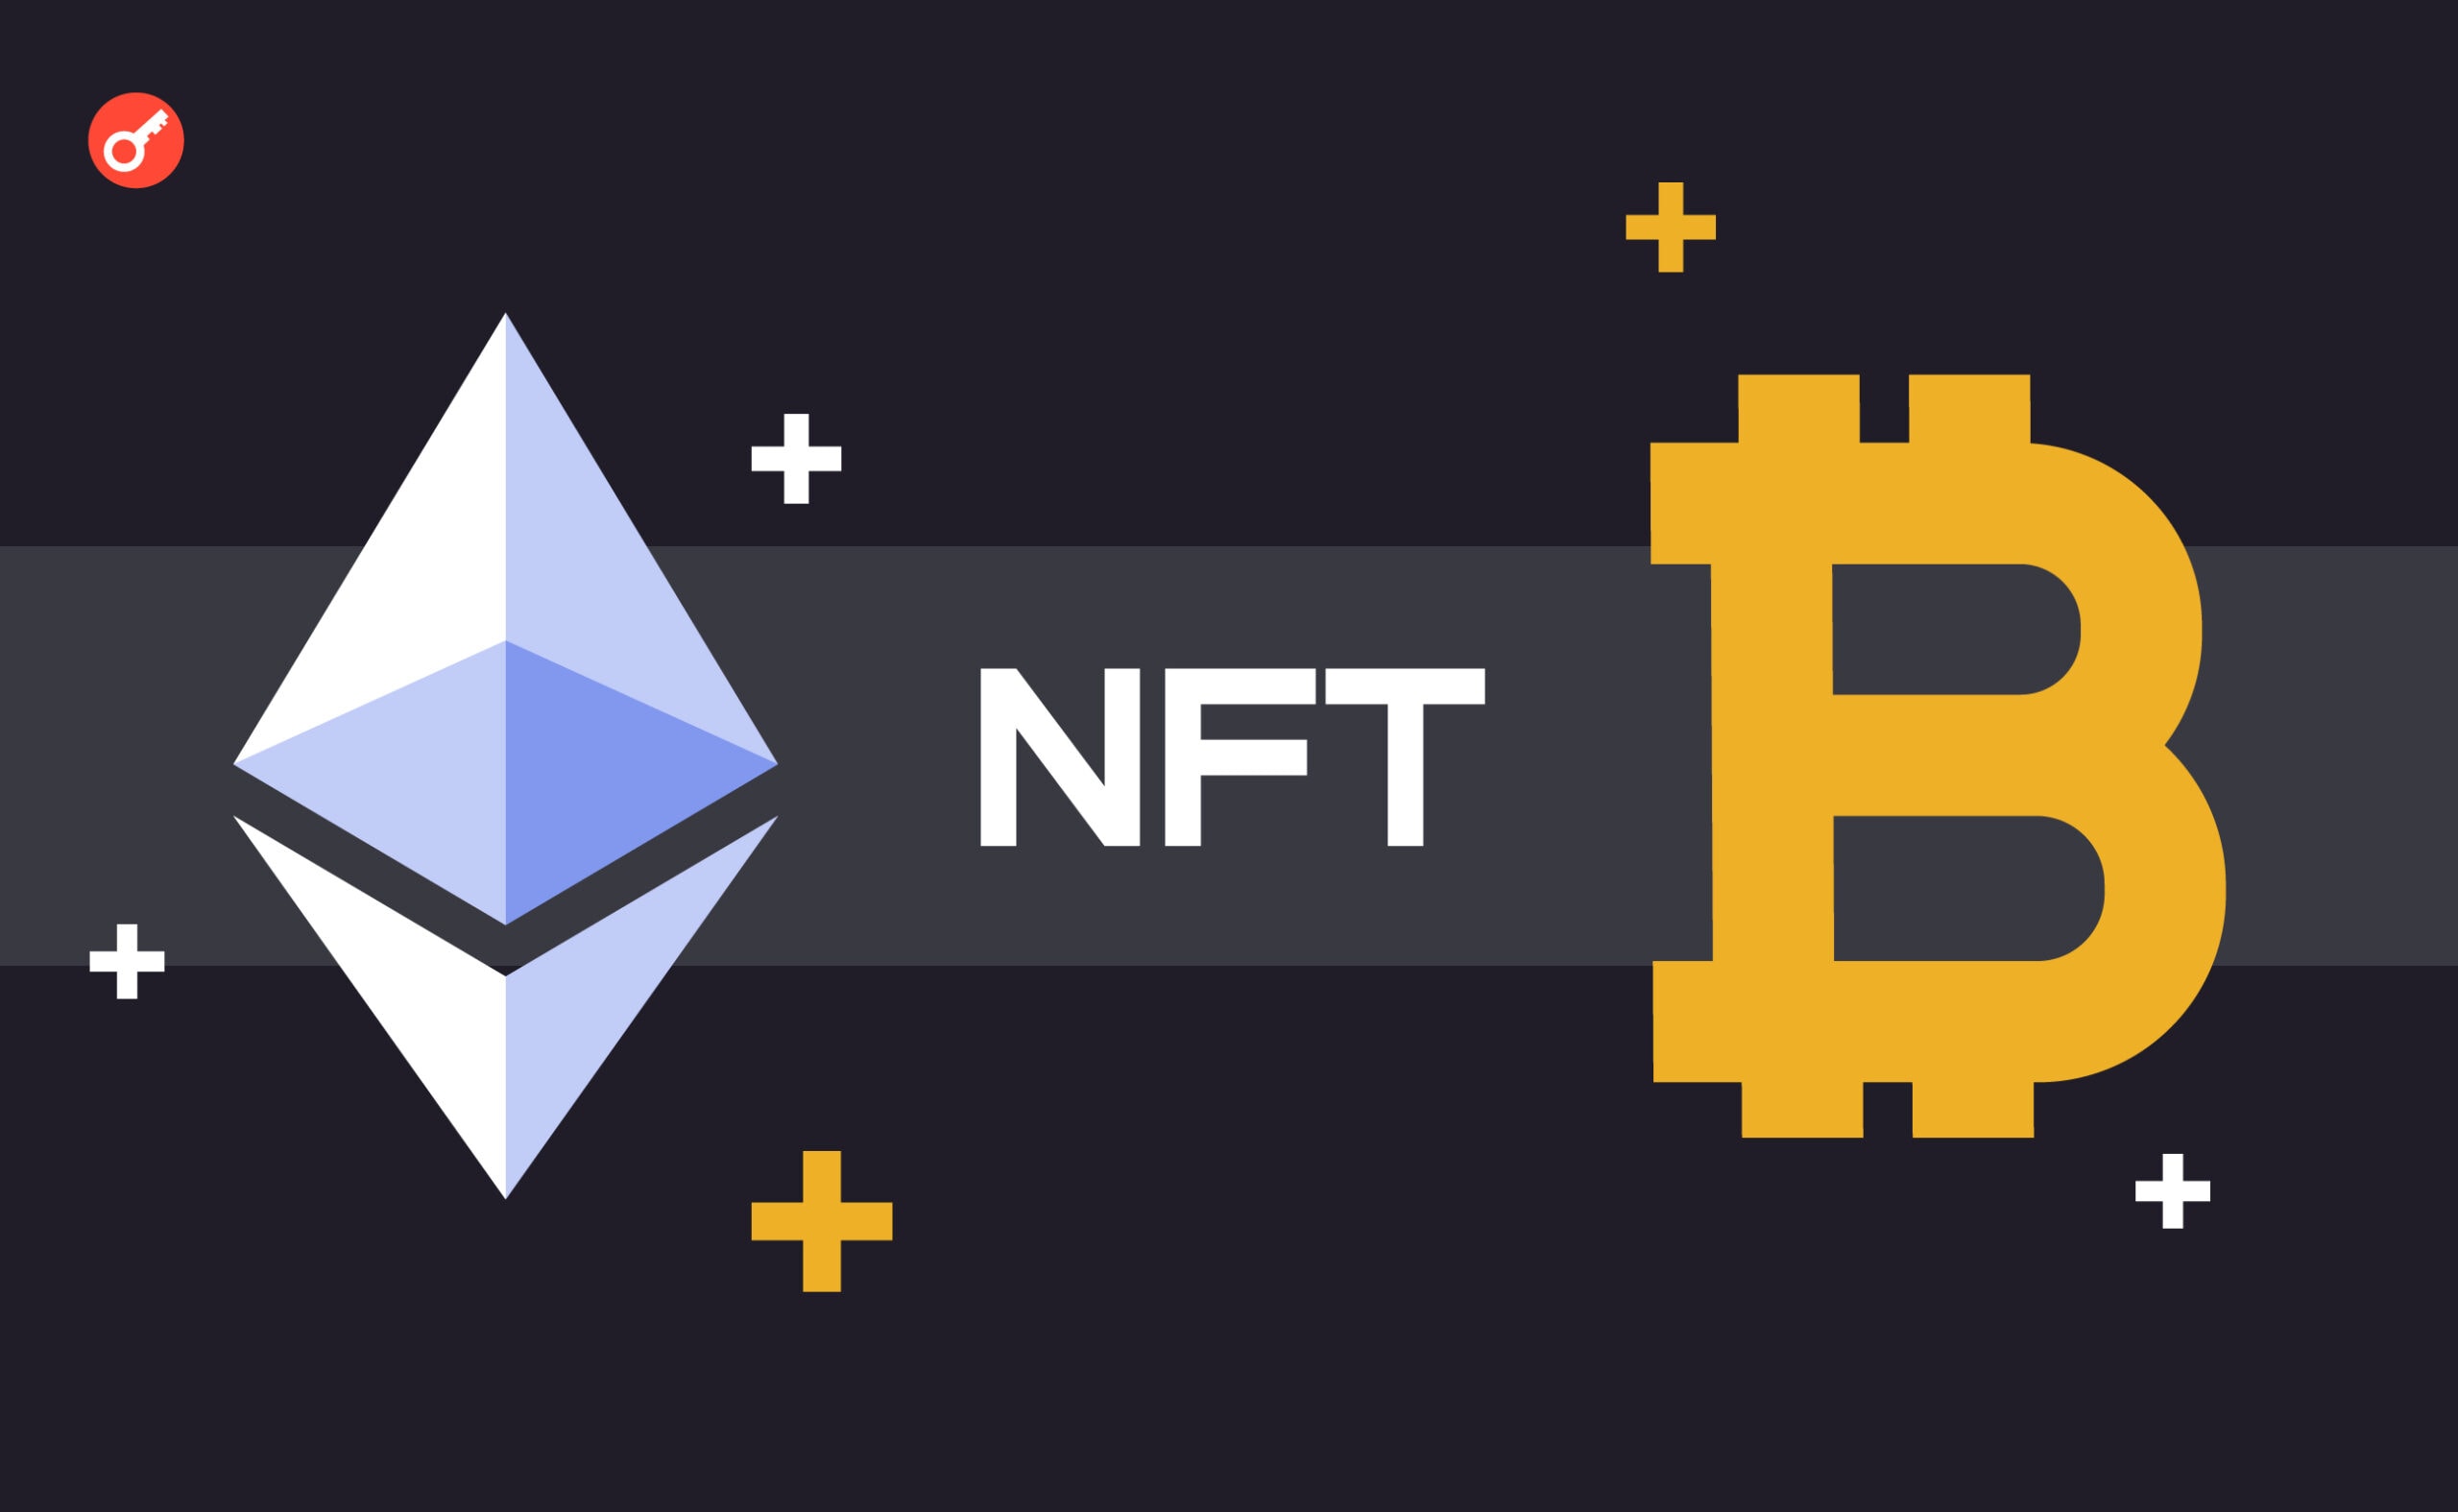 Bitcoin Miladys выпустил мост для перевода Ethereum NFT на блокчейн Bitcoin. Заглавный коллаж новости.